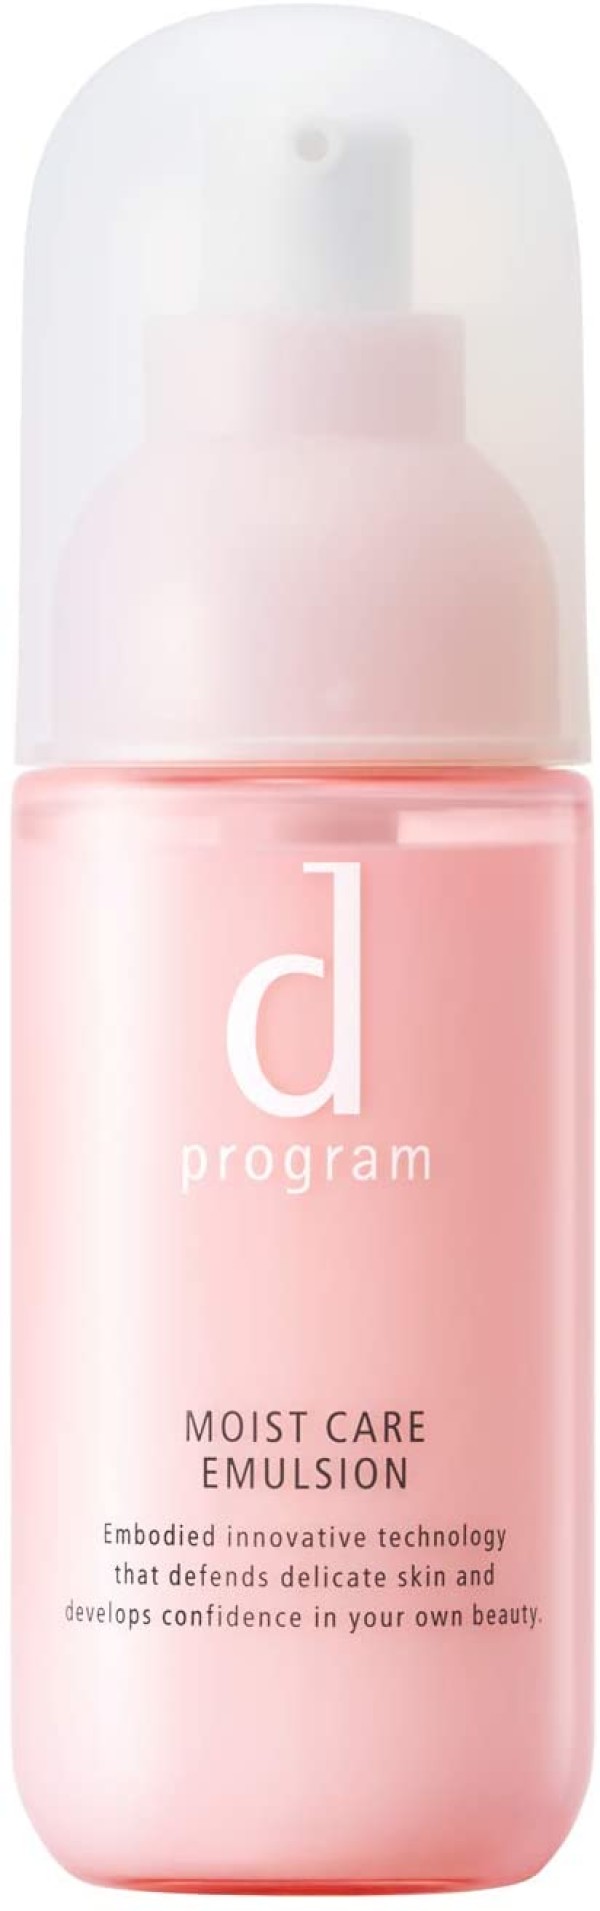 Увлажняющая эмульсия для сухой кожи Shiseido D Program Moist Care Emulsion